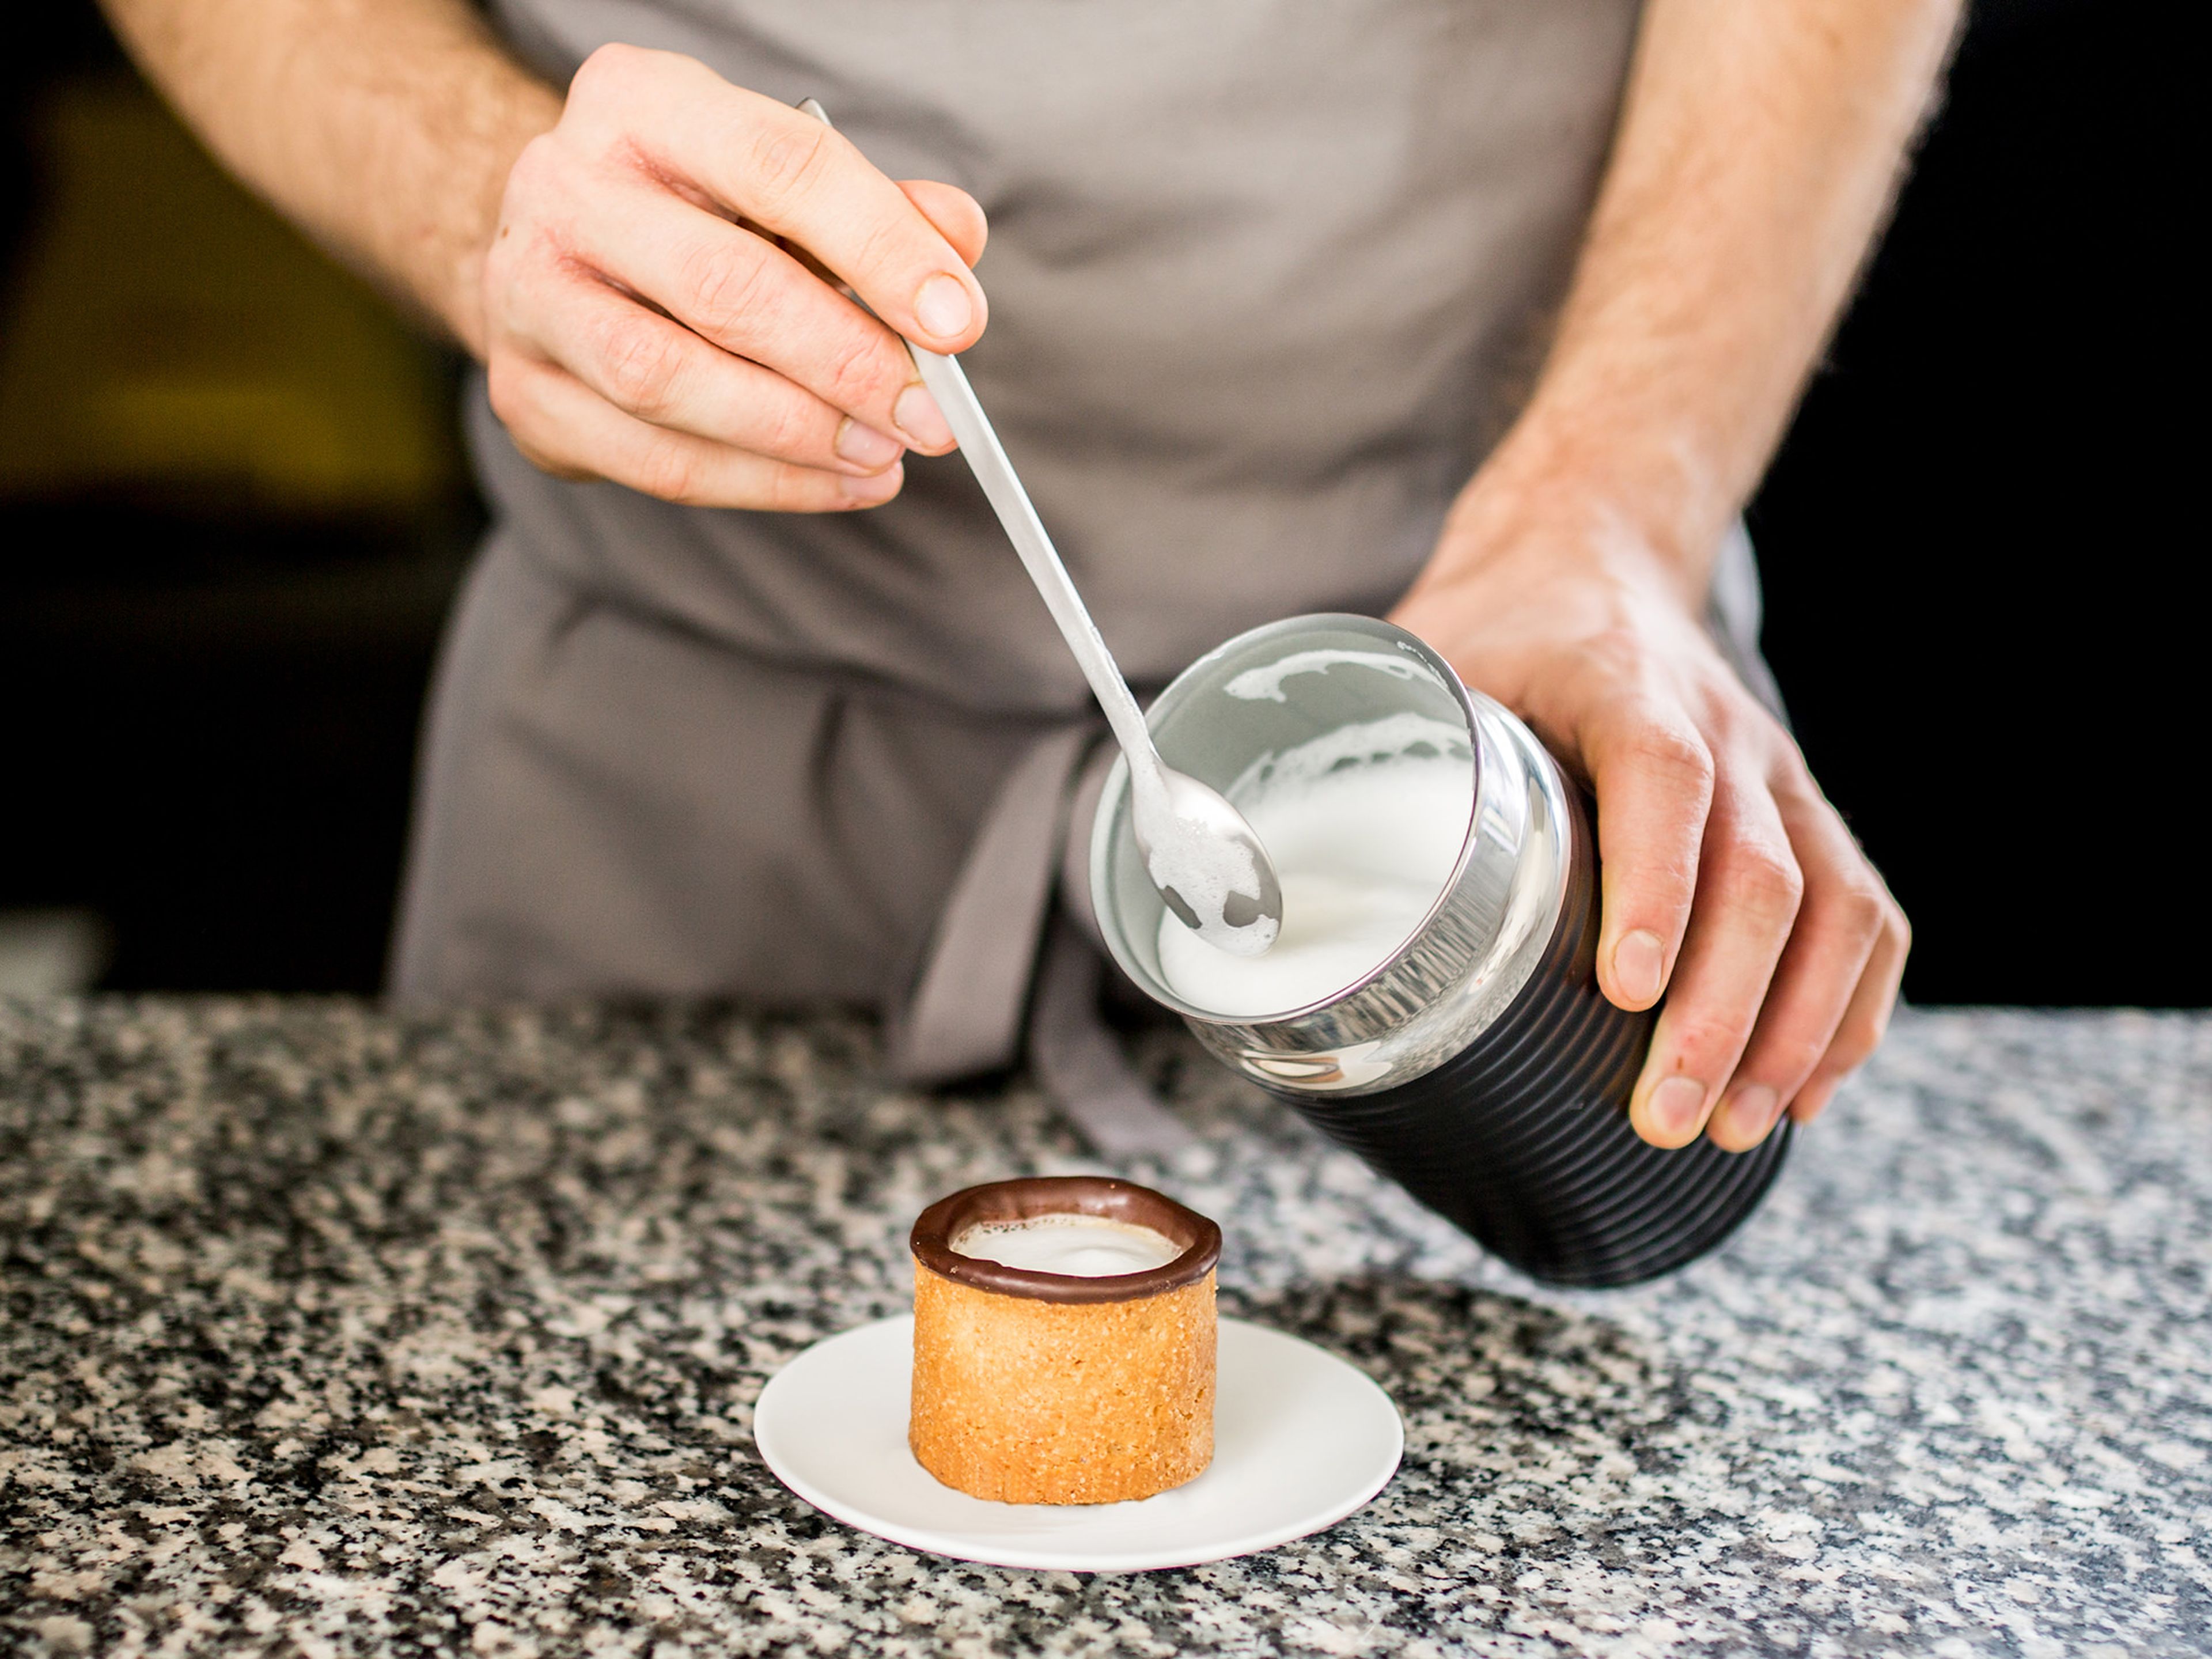 Sobald die Schokolade ausgehärtet ist, können die Cups mit Espresso befüllt werden. Nach Geschmack mit etwas Milchschaum abrunden und genießen!